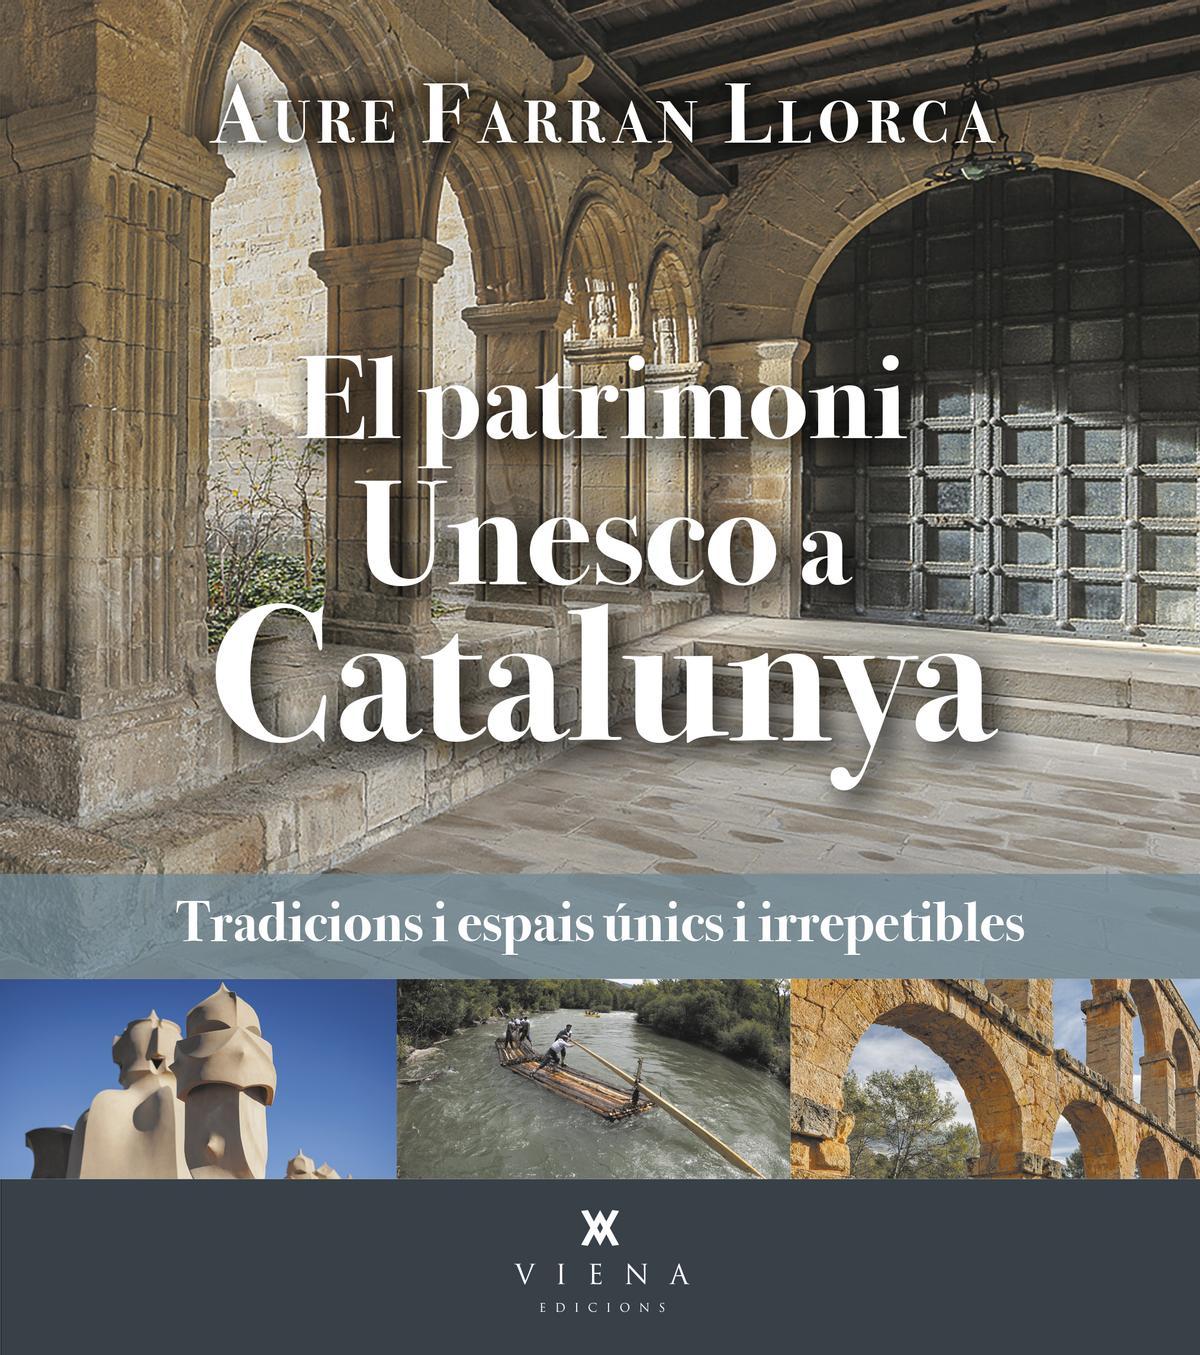 &quot;El patrimoni Unesco a Catalunya&quot;. Aure Farran Llorca. Viena. 232 pàgines. 21 euros.